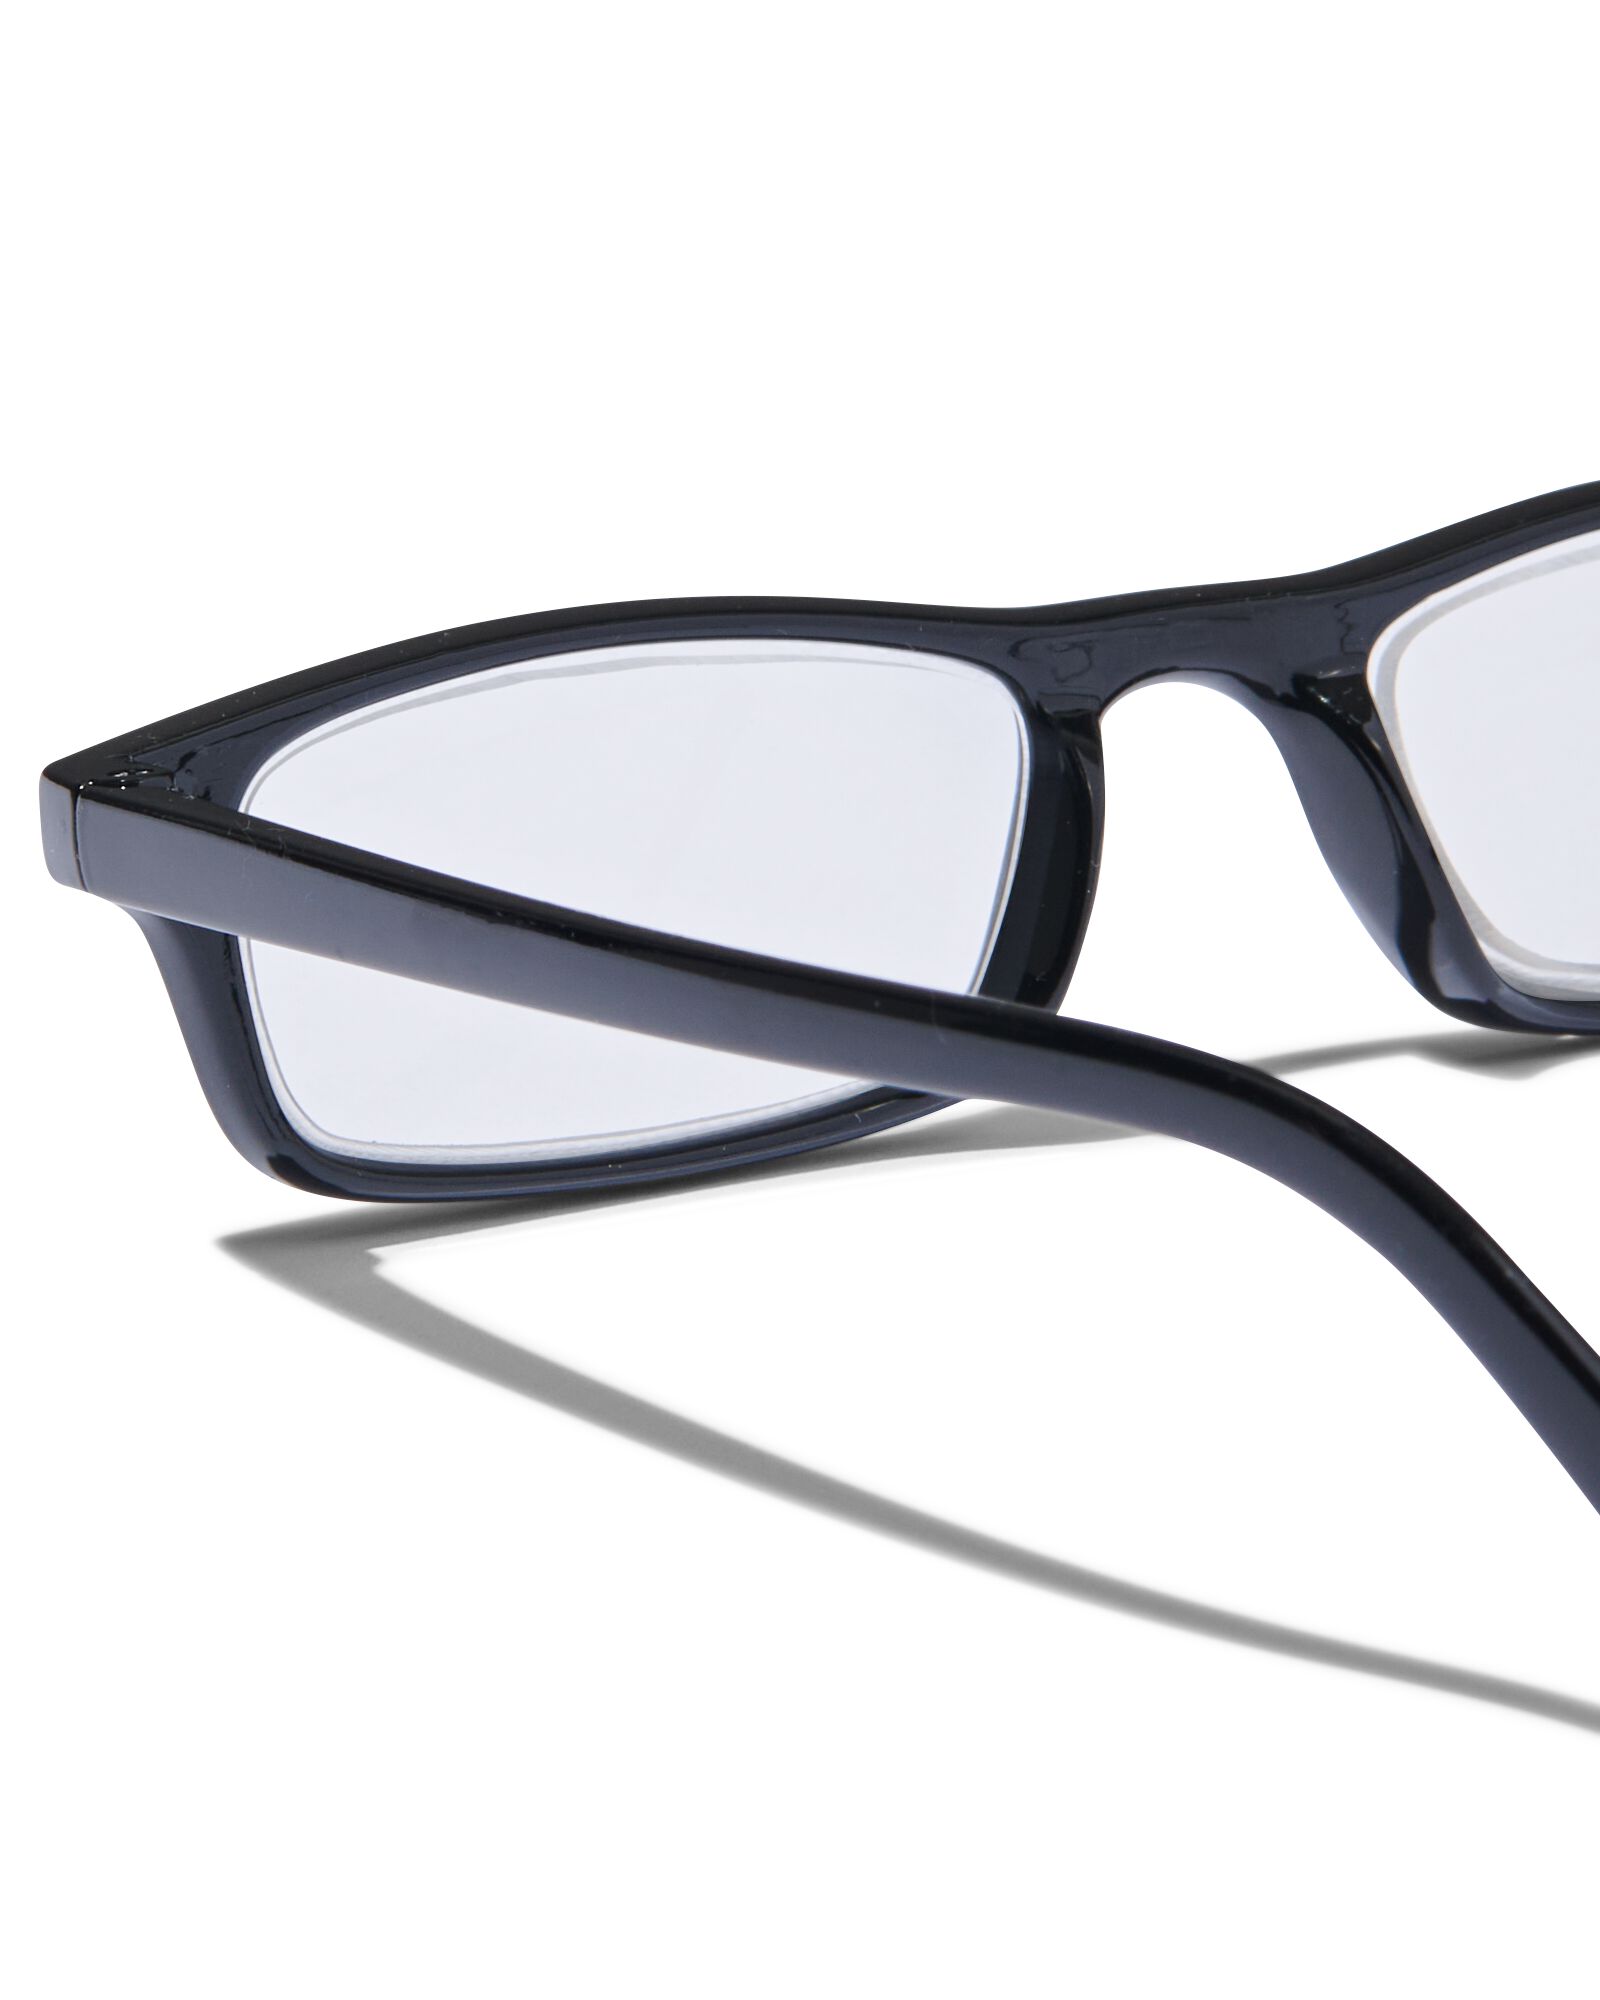 leesbril kunststof +2.5 - HEMA